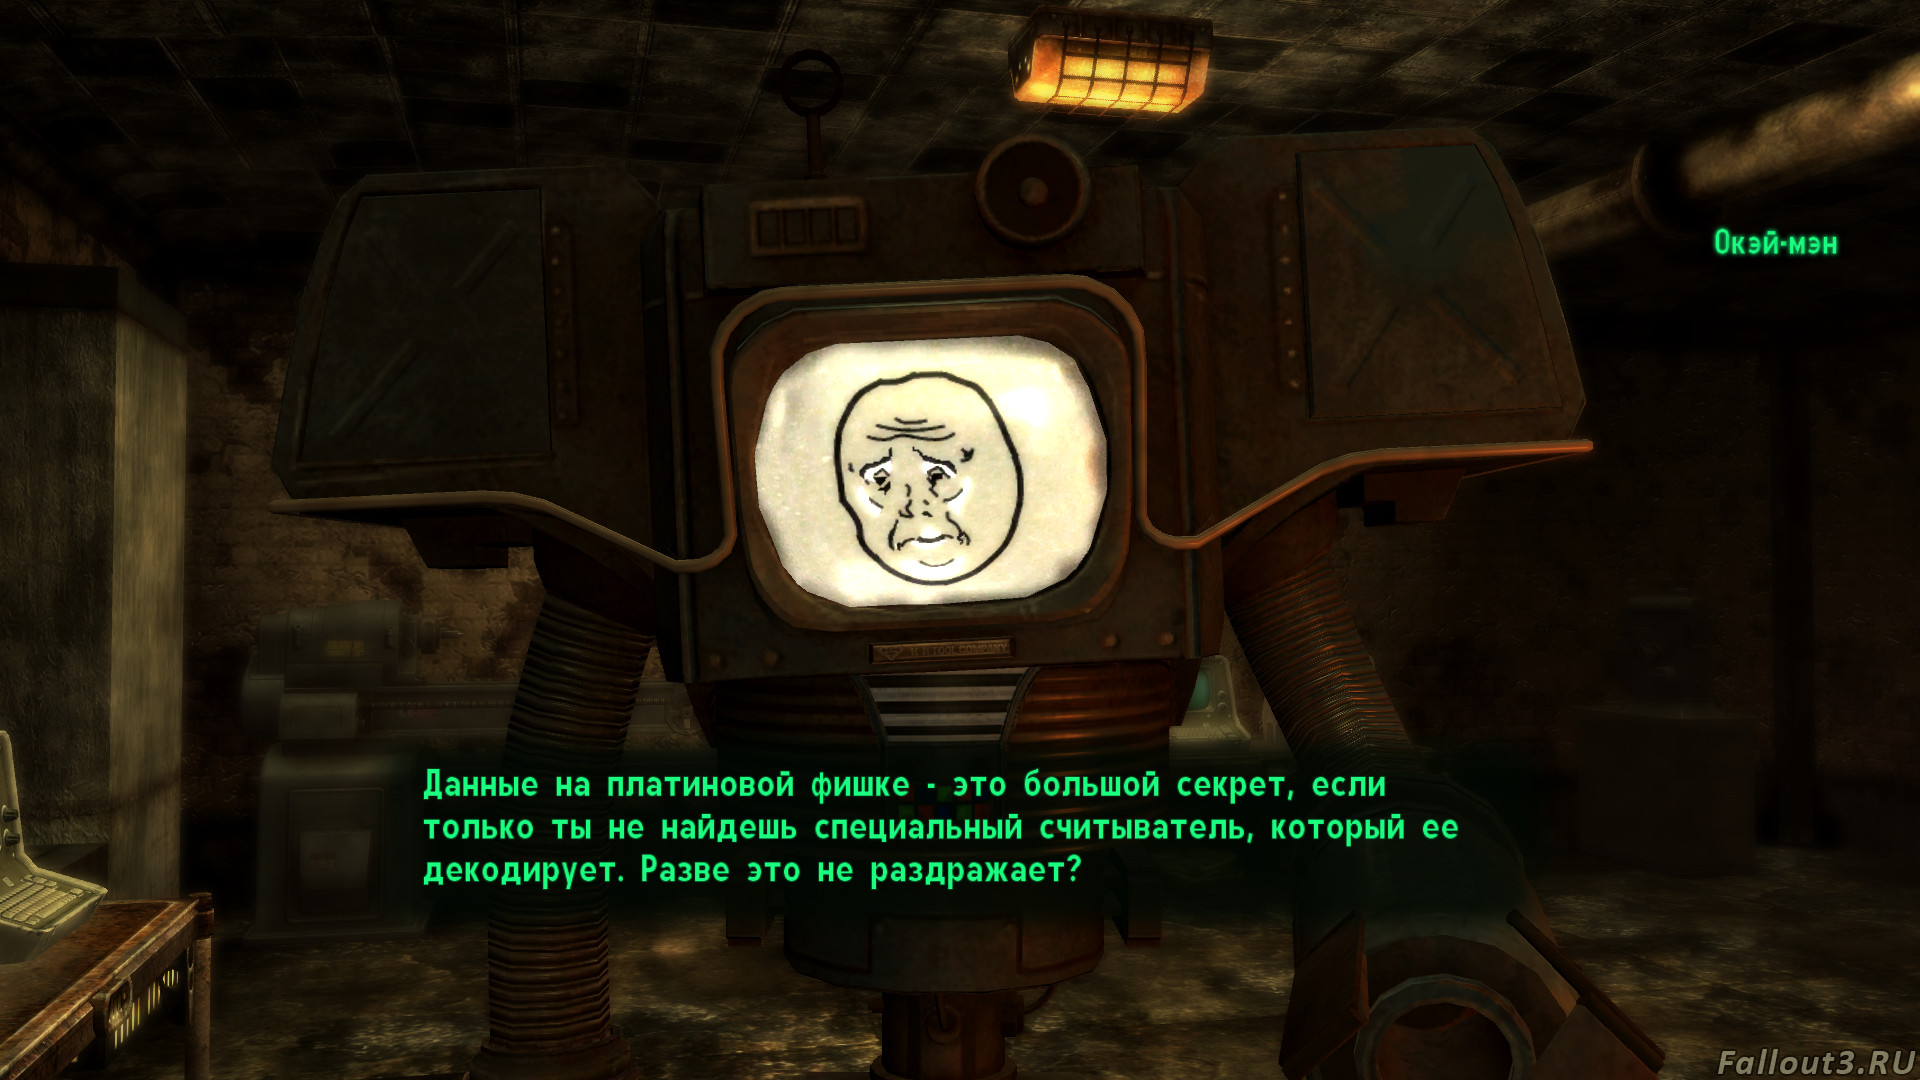 Fallout 4 все песни радио фото 115